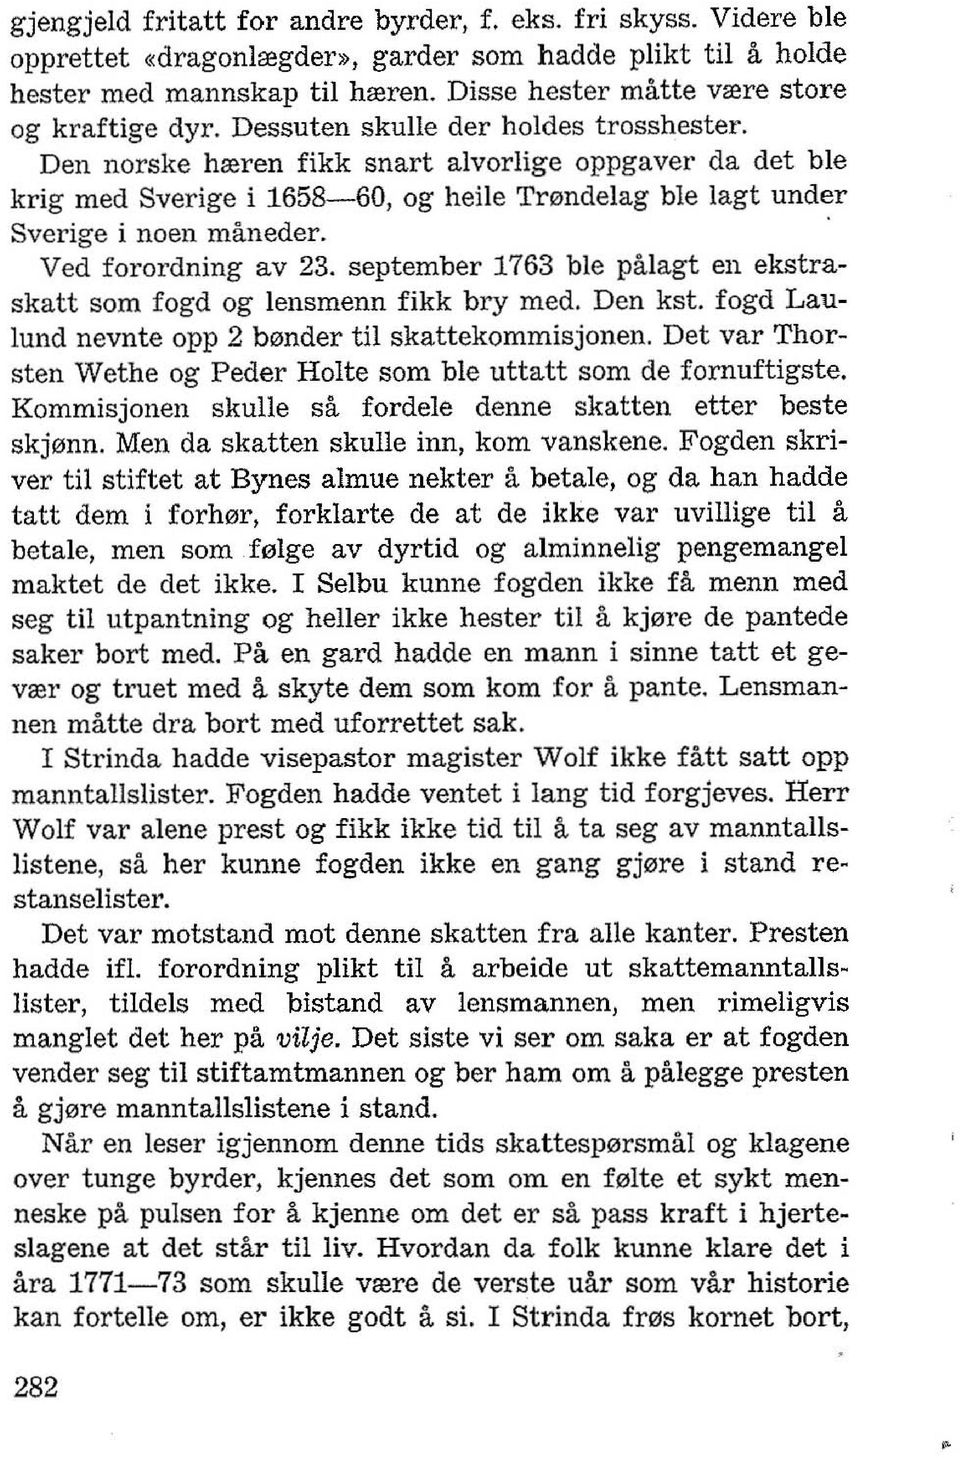 Den norske hreren fikk snart alvorlige oppgaver da det ble krig med Sverige i 1658-60, og heile Tmndelag ble lagt under Sverige i noen maneder. Ved forordning av 23.